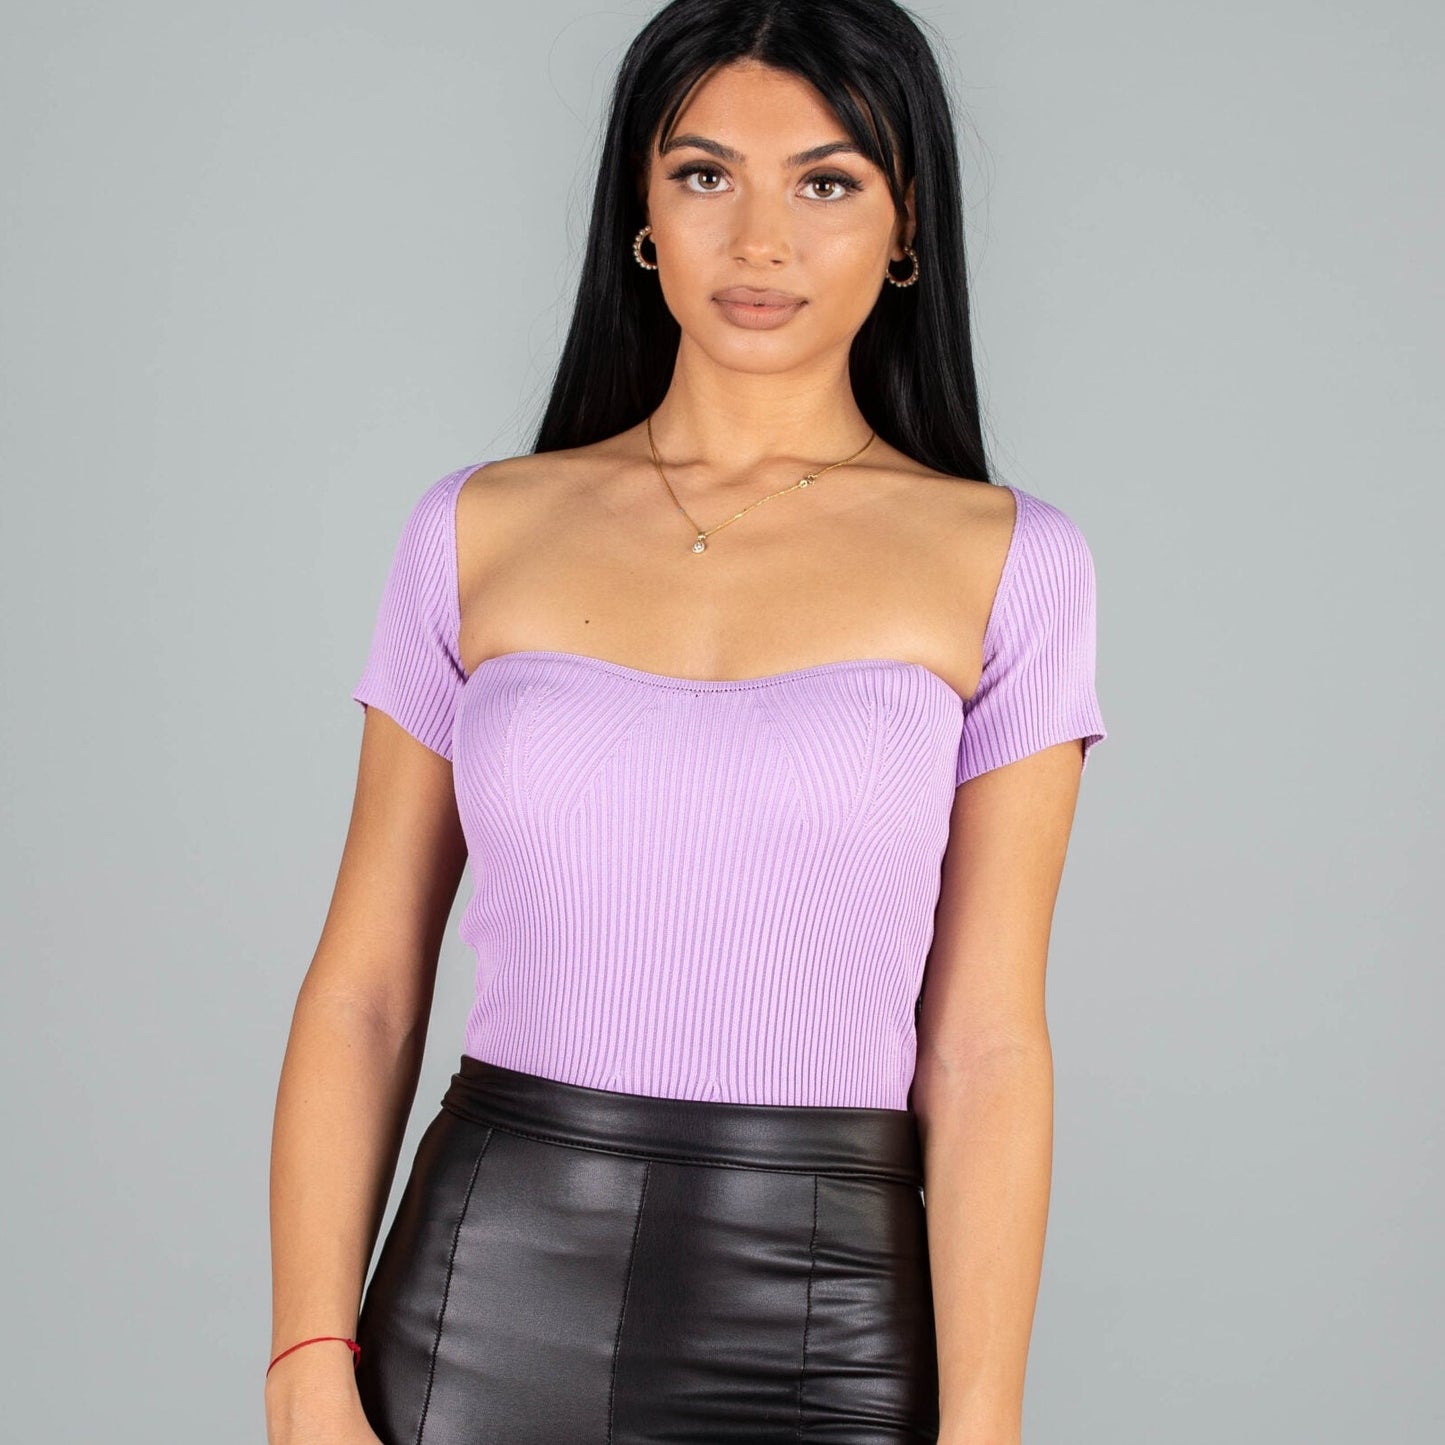 Дамска блуза CORSET  https://bvseductive.com/products/дамска-блуза-corset-2  100 % вискоза стилна дамска блуза в лилав цвят с изчистен класически дизайн&nbsp; секси деколте и къс ръкав&nbsp; чудесен избор за модерна визия